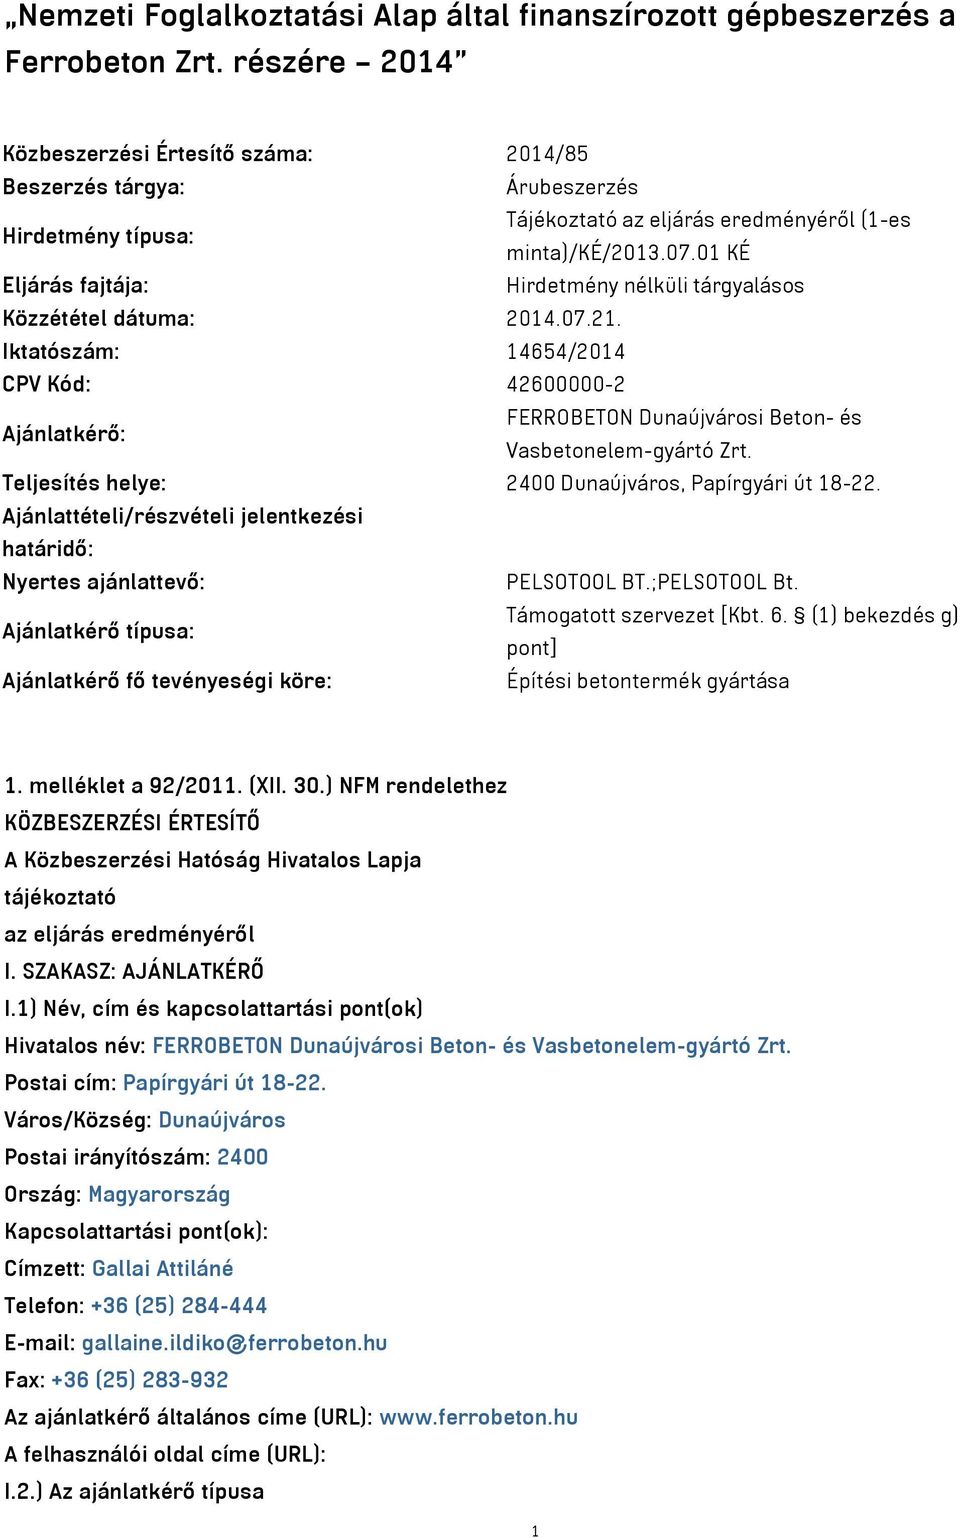 01 KÉ Eljárás fajtája: Hirdetmény nélküli tárgyalásos Közzététel dátuma: 2014.07.21. Iktatószám: 14654/2014 CPV Kód: 42600000-2 Ajánlatkérő: FERROBETON Dunaújvárosi Beton- és Vasbetonelem-gyártó Zrt.